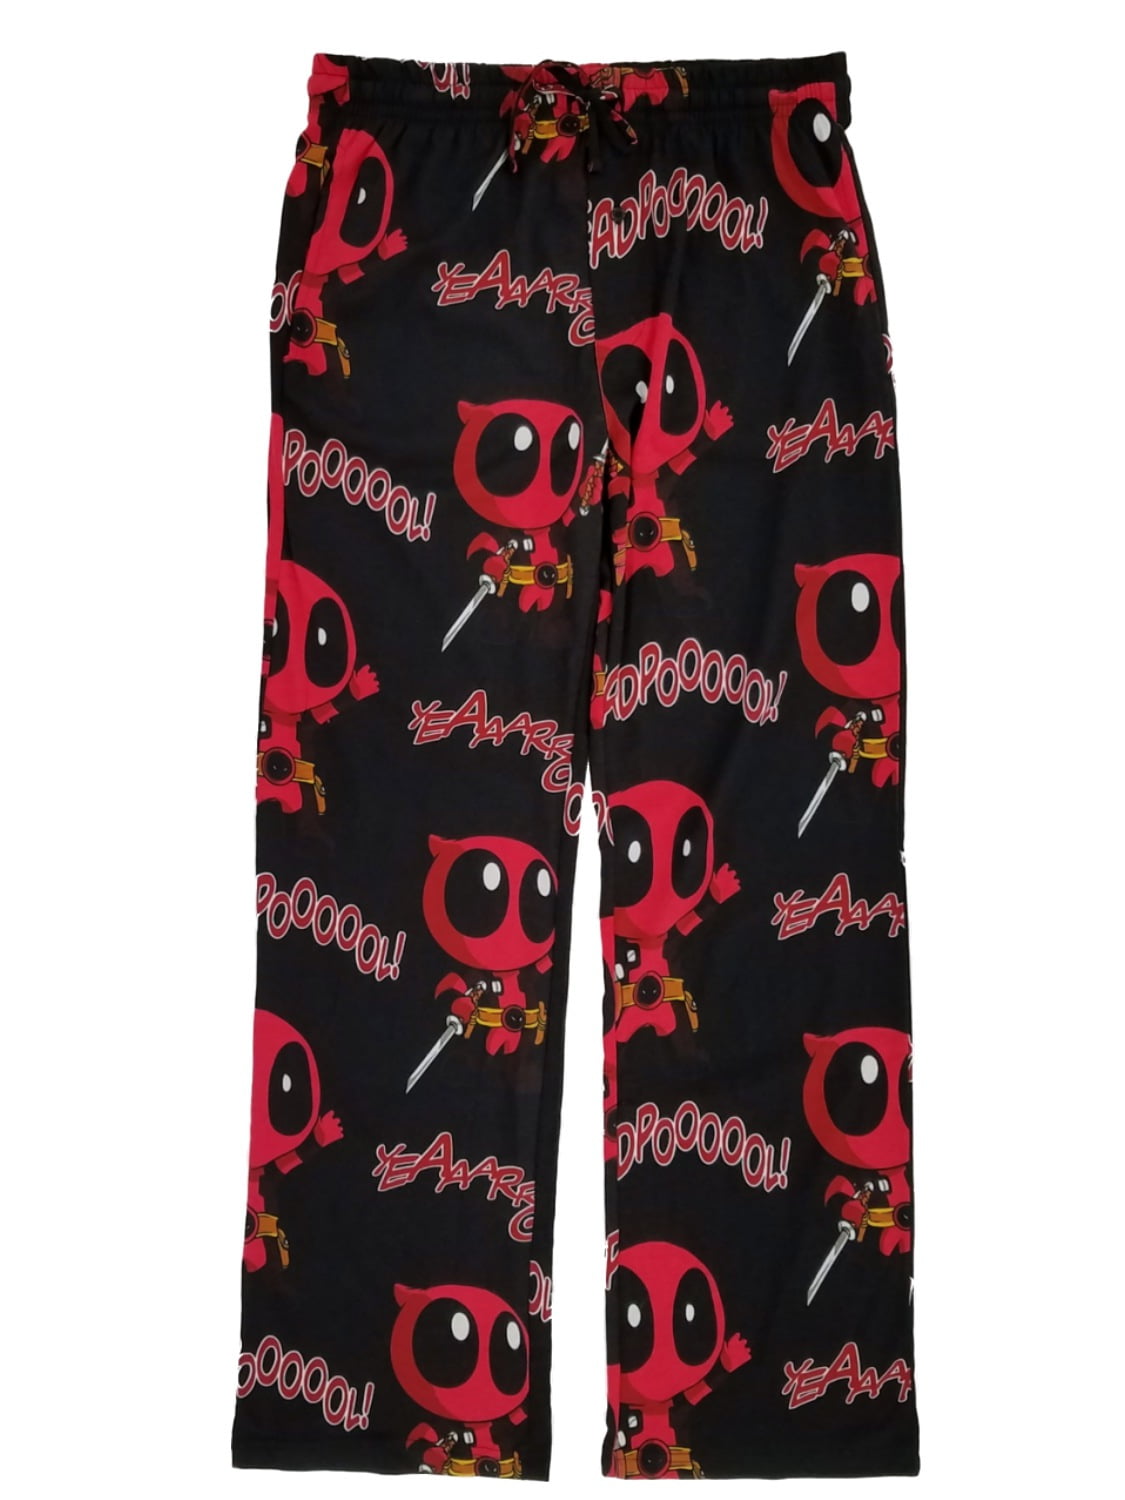 Details about  / Mens Women NEW Marvel Deadpool Heather Black Pajama Lounge Pants Size M-L